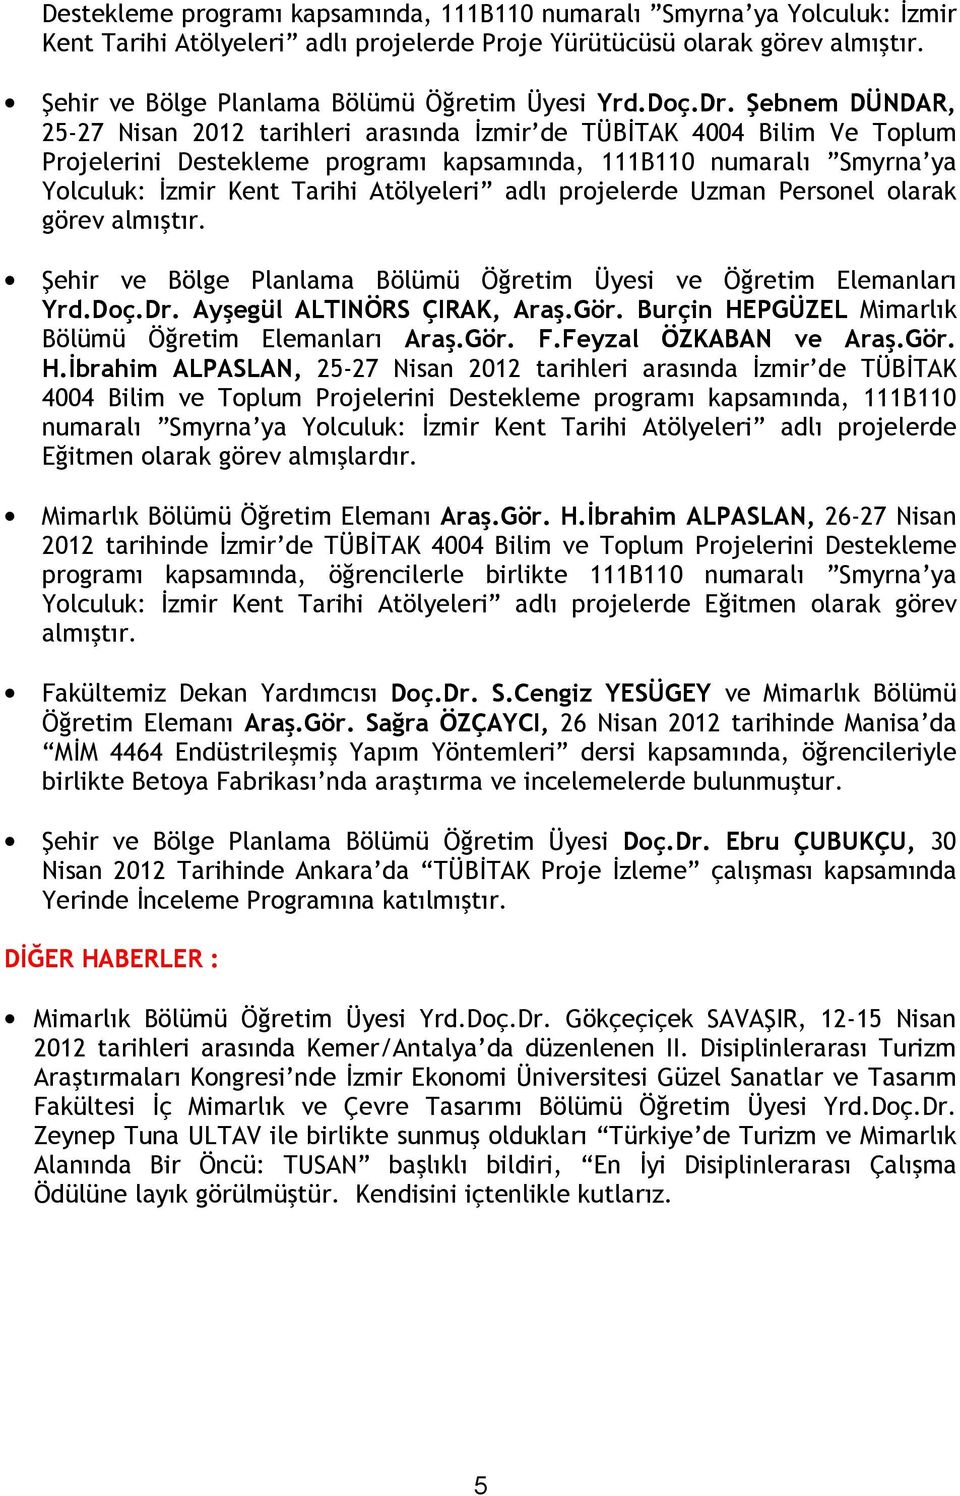 Şebnem DÜNDAR, 25-27 Nisan 2012 tarihleri arasında İzmir de TÜBİTAK 4004 Bilim Ve Toplum Projelerini Destekleme programı kapsamında, 111B110 numaralı Smyrna ya Yolculuk: İzmir Kent Tarihi Atölyeleri